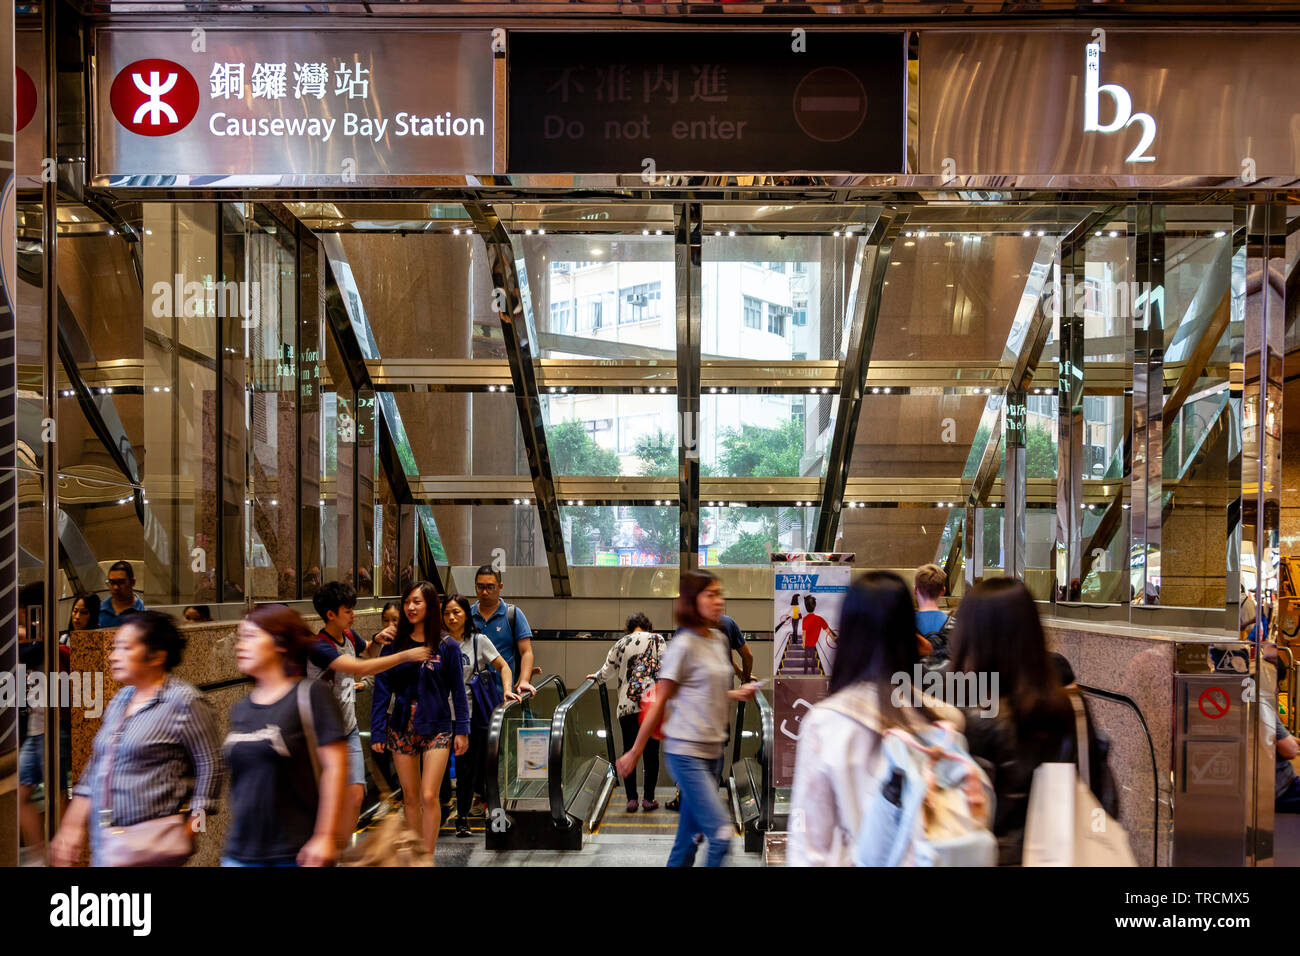 Causeway Bay Mtr Station Entrance Hong Kong China Stock Photo Alamy